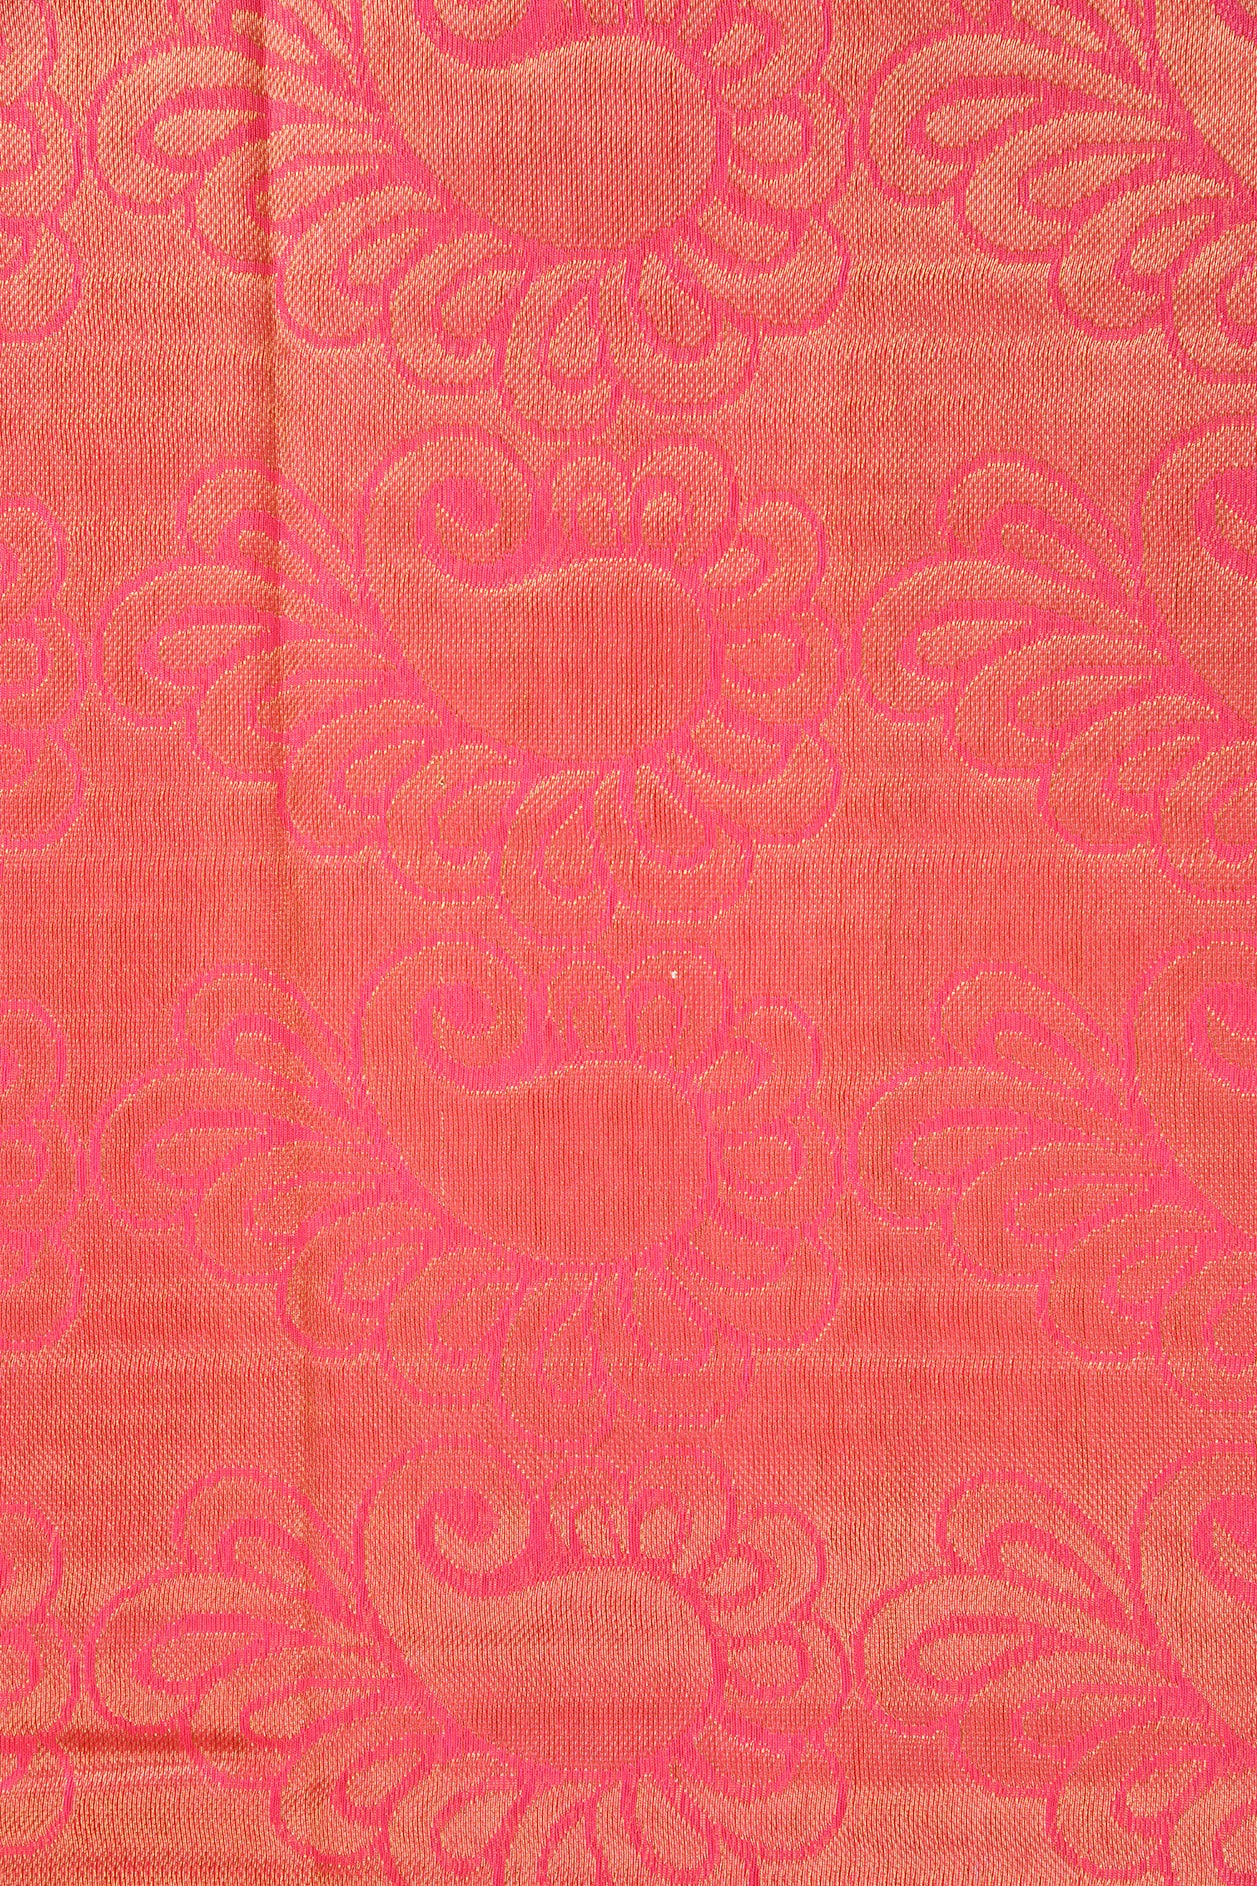 Peacock Border Design Rose Pink Kora Silk Cotton Saree